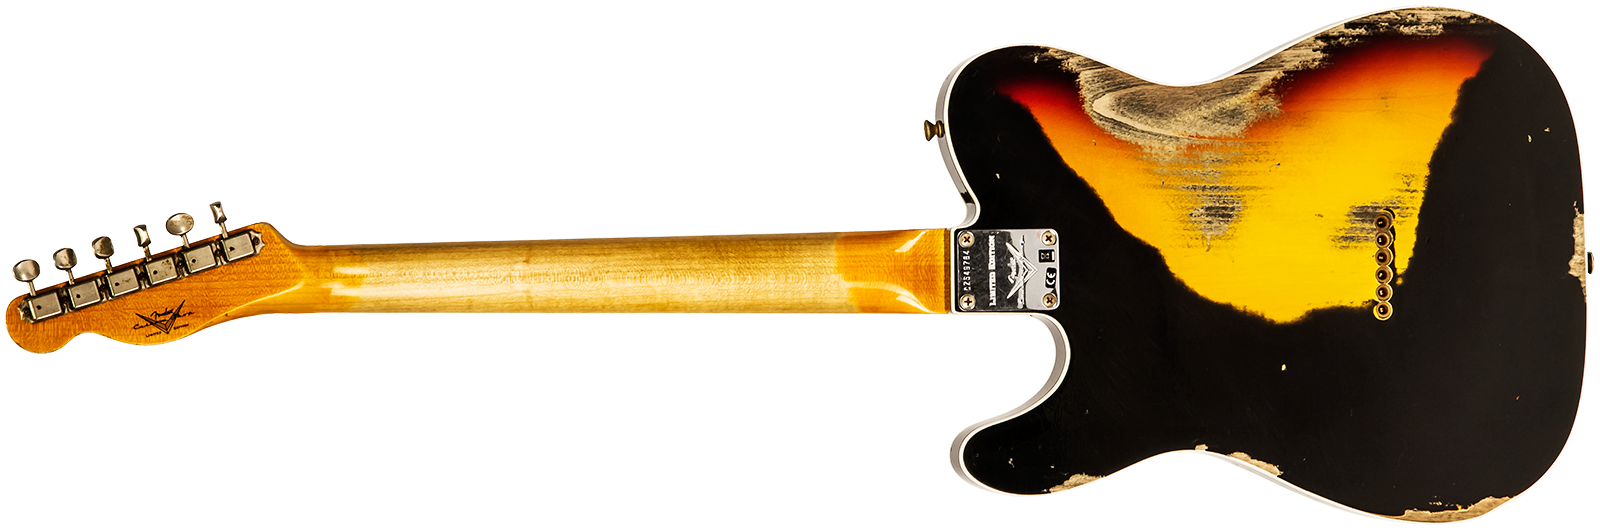 Fender Custom Shop Tele Custom 1960 Sh Ltd Hs Ht Rw #cz549784 - Heavy Relic Black Over 3-color Sunburst - Guitare Électrique Forme Tel - Variation 1